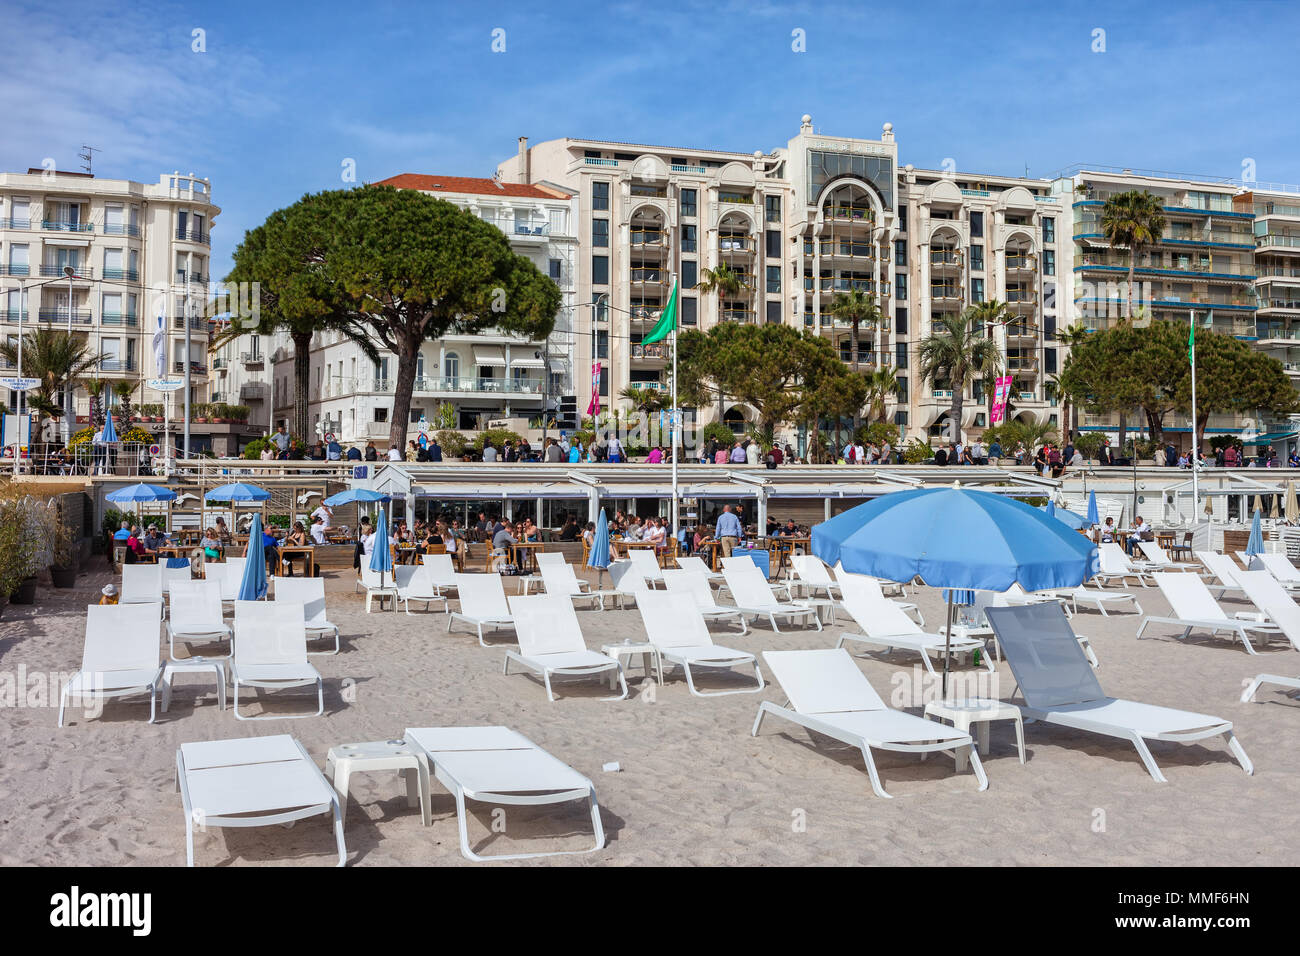 France, Cannes, plage avec transats sur la côte d'Azur, les bâtiments le long du boulevard de la Croisette Banque D'Images